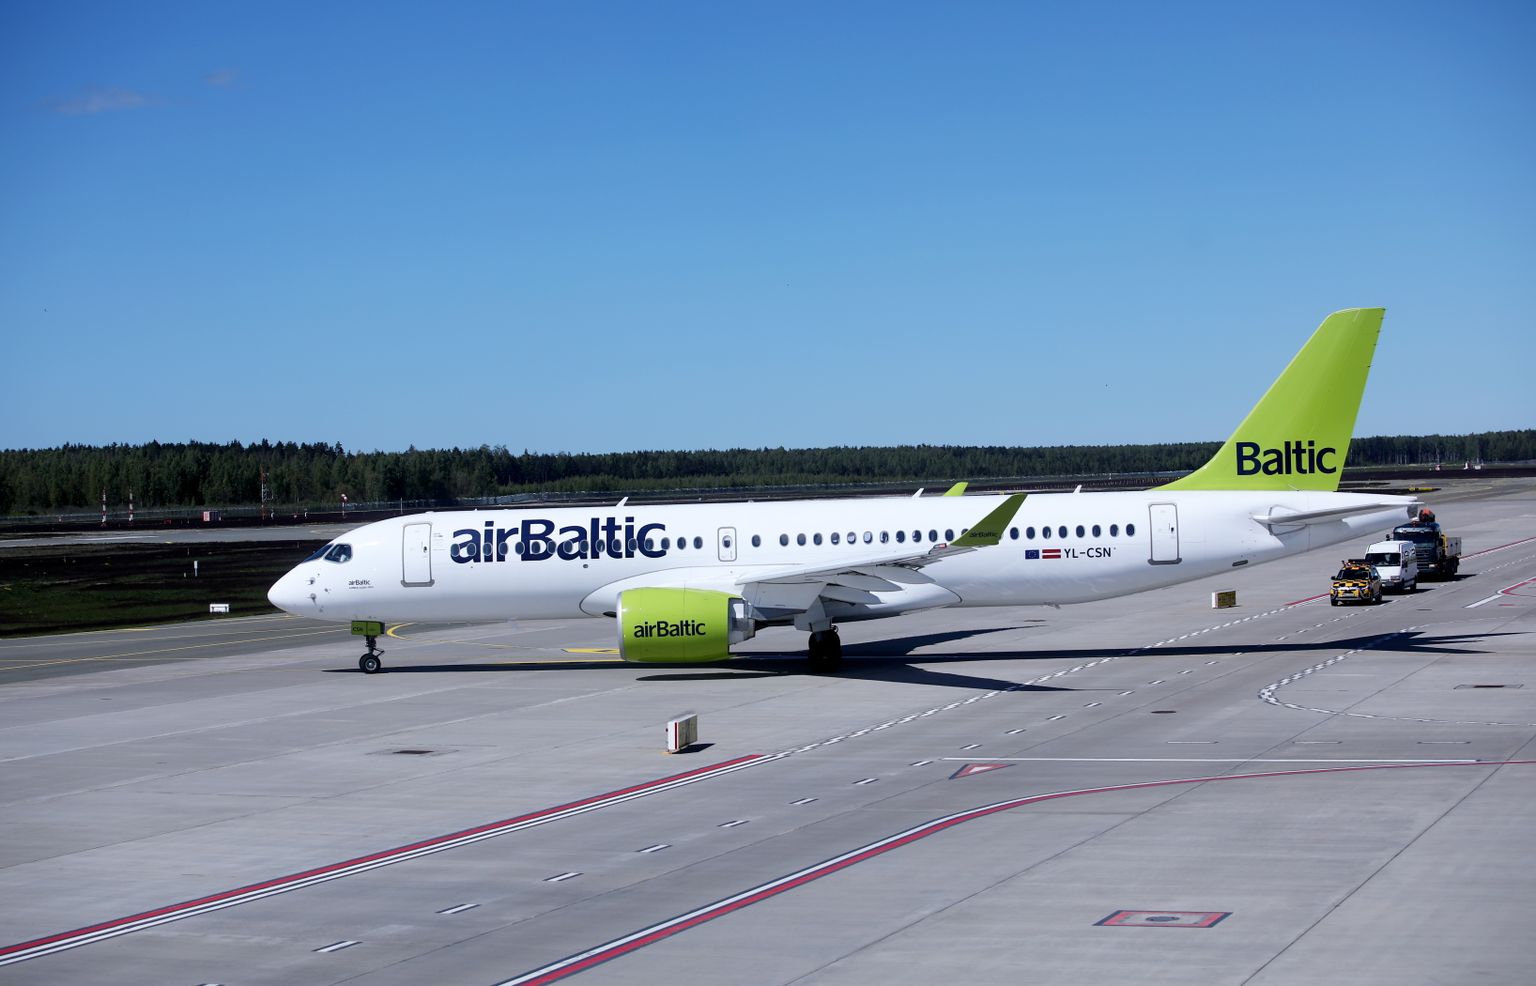 Lidsabiedrības "airBaltic" lidmašīna. Ilustratīvs foto.